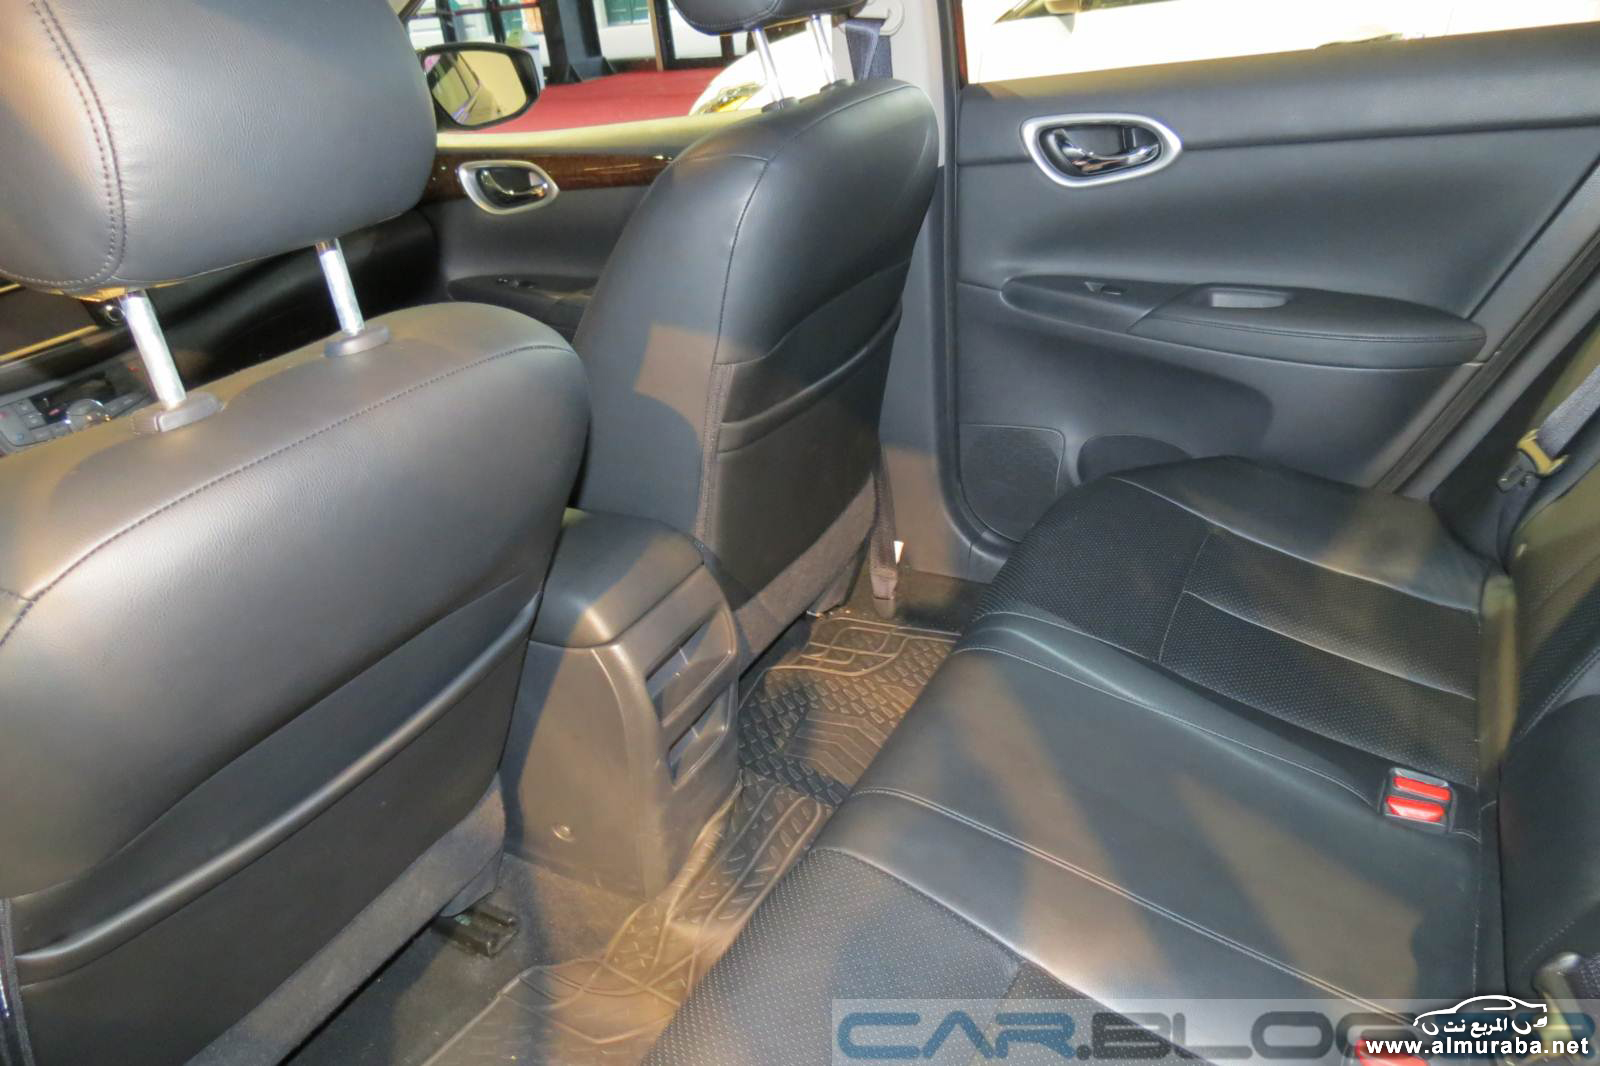 Nissan-Sentra-2015-interior (2)